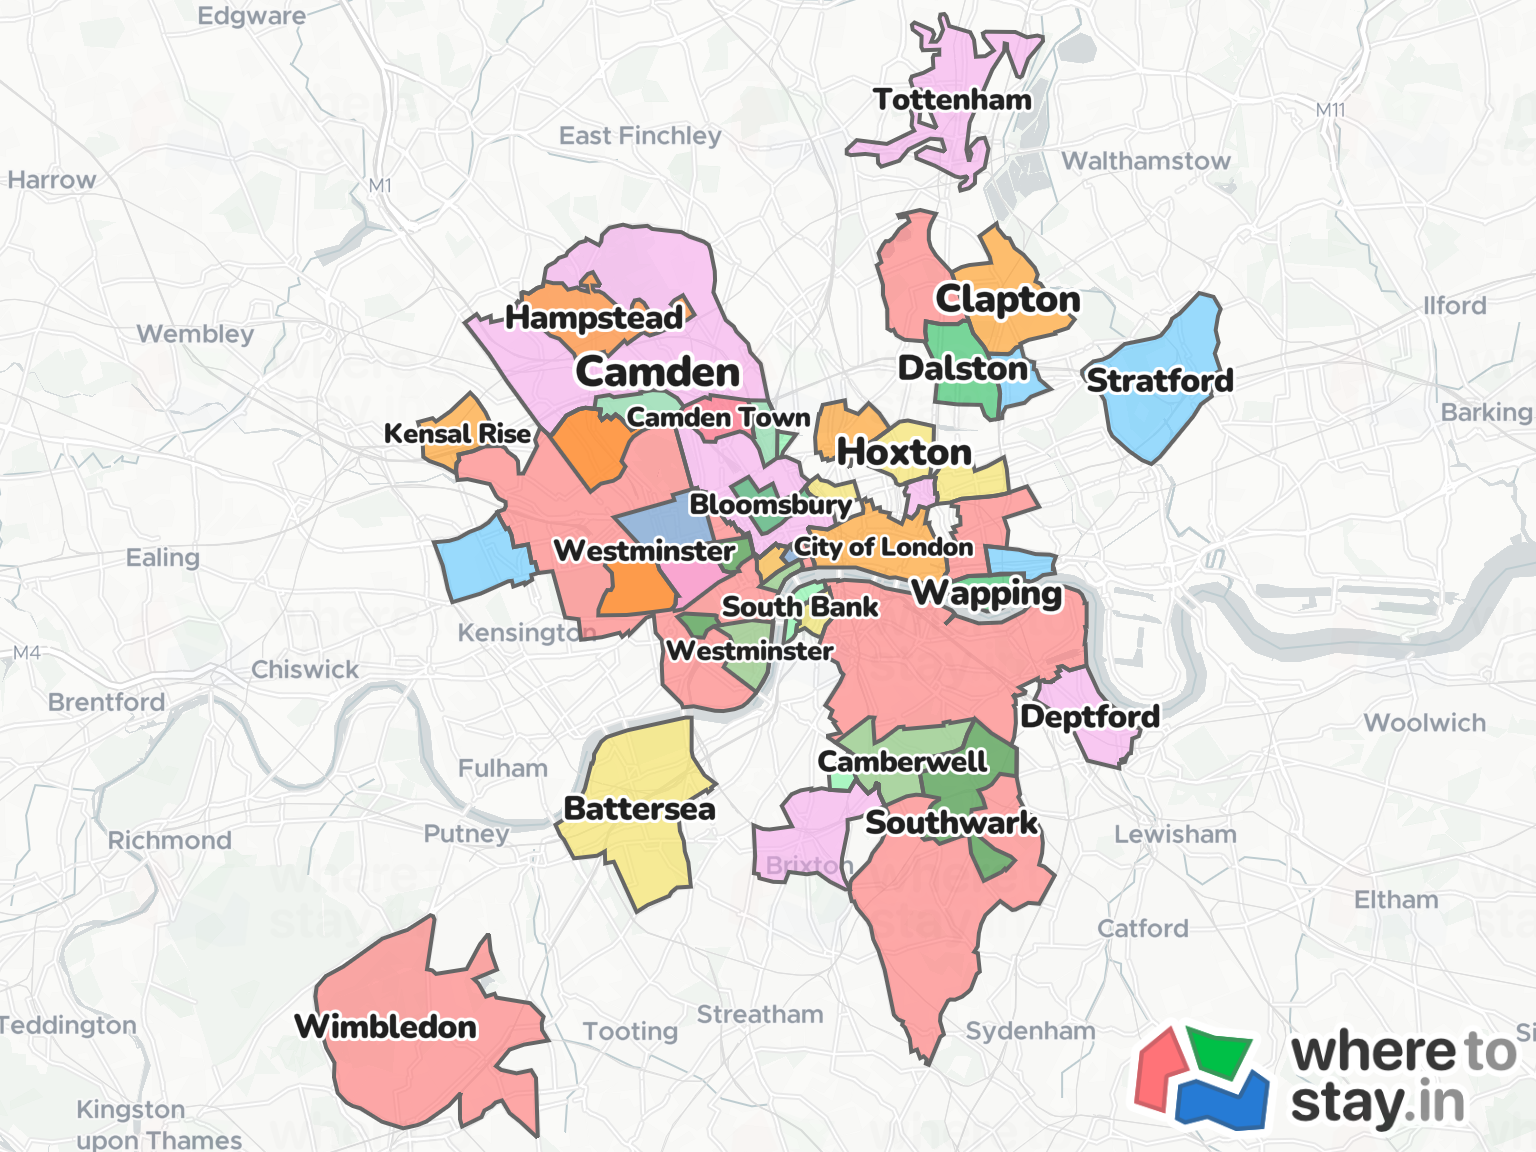 London Neighborhood Map